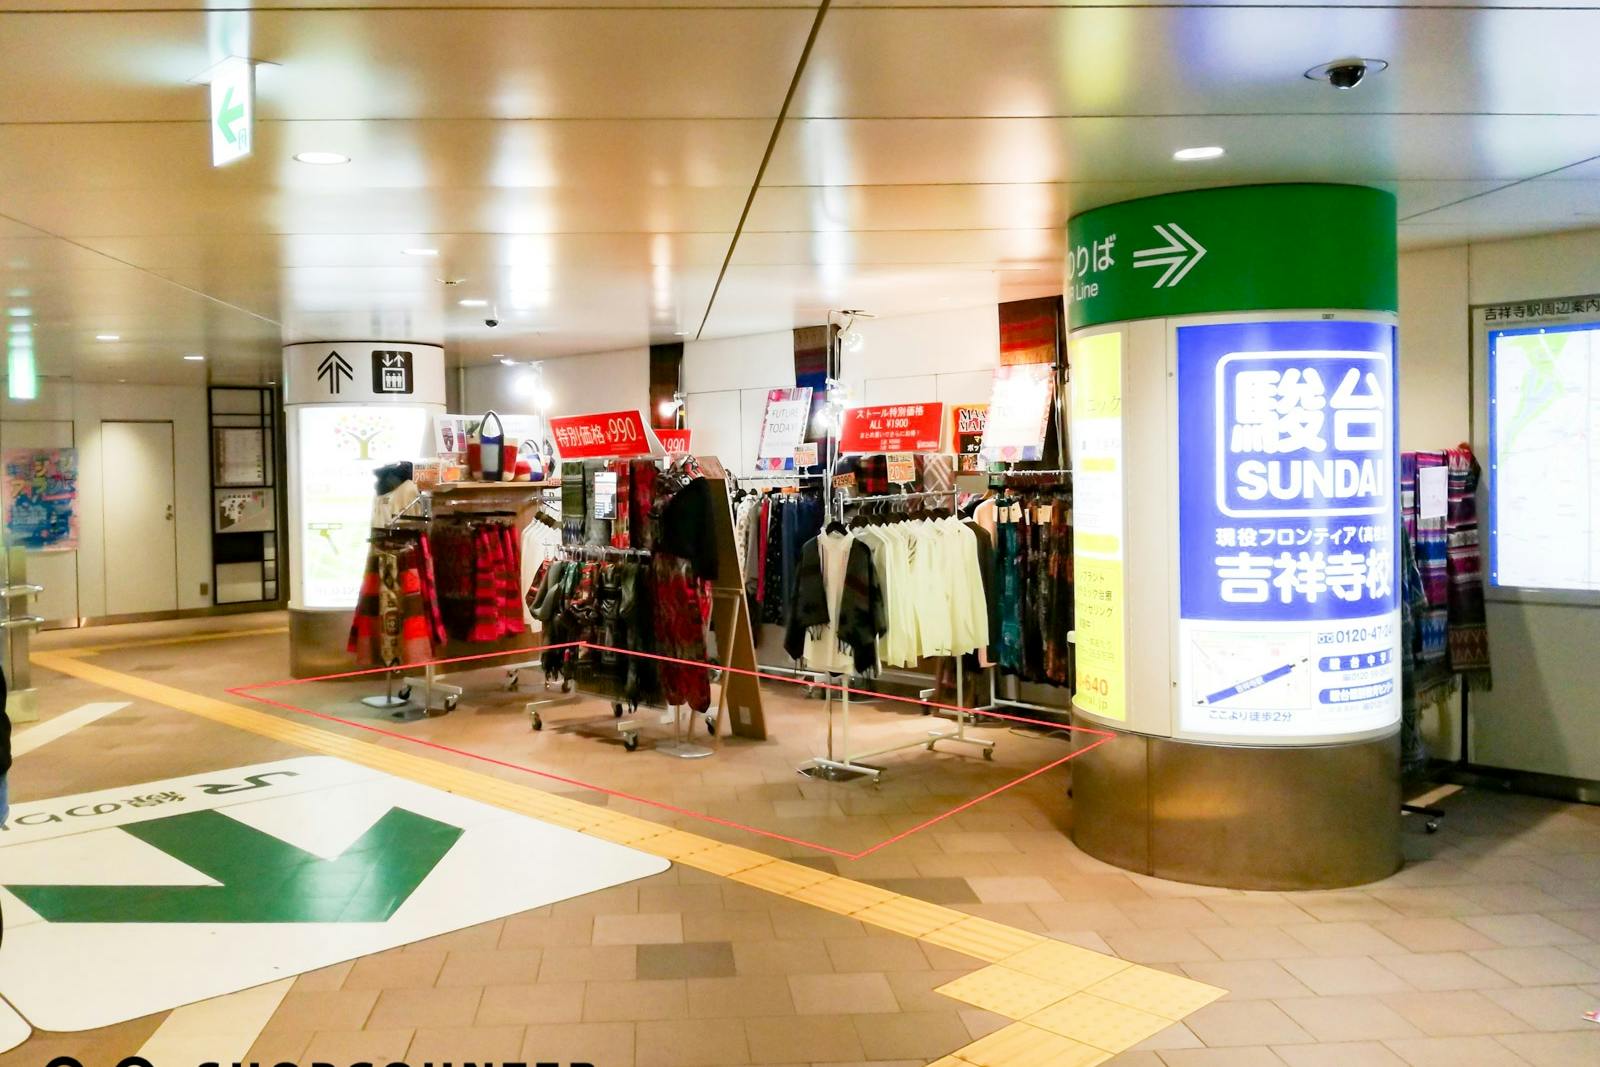 JR吉祥寺駅の改札側にあるスペースですので、駅に向かう多くの方へアピールが可能です。